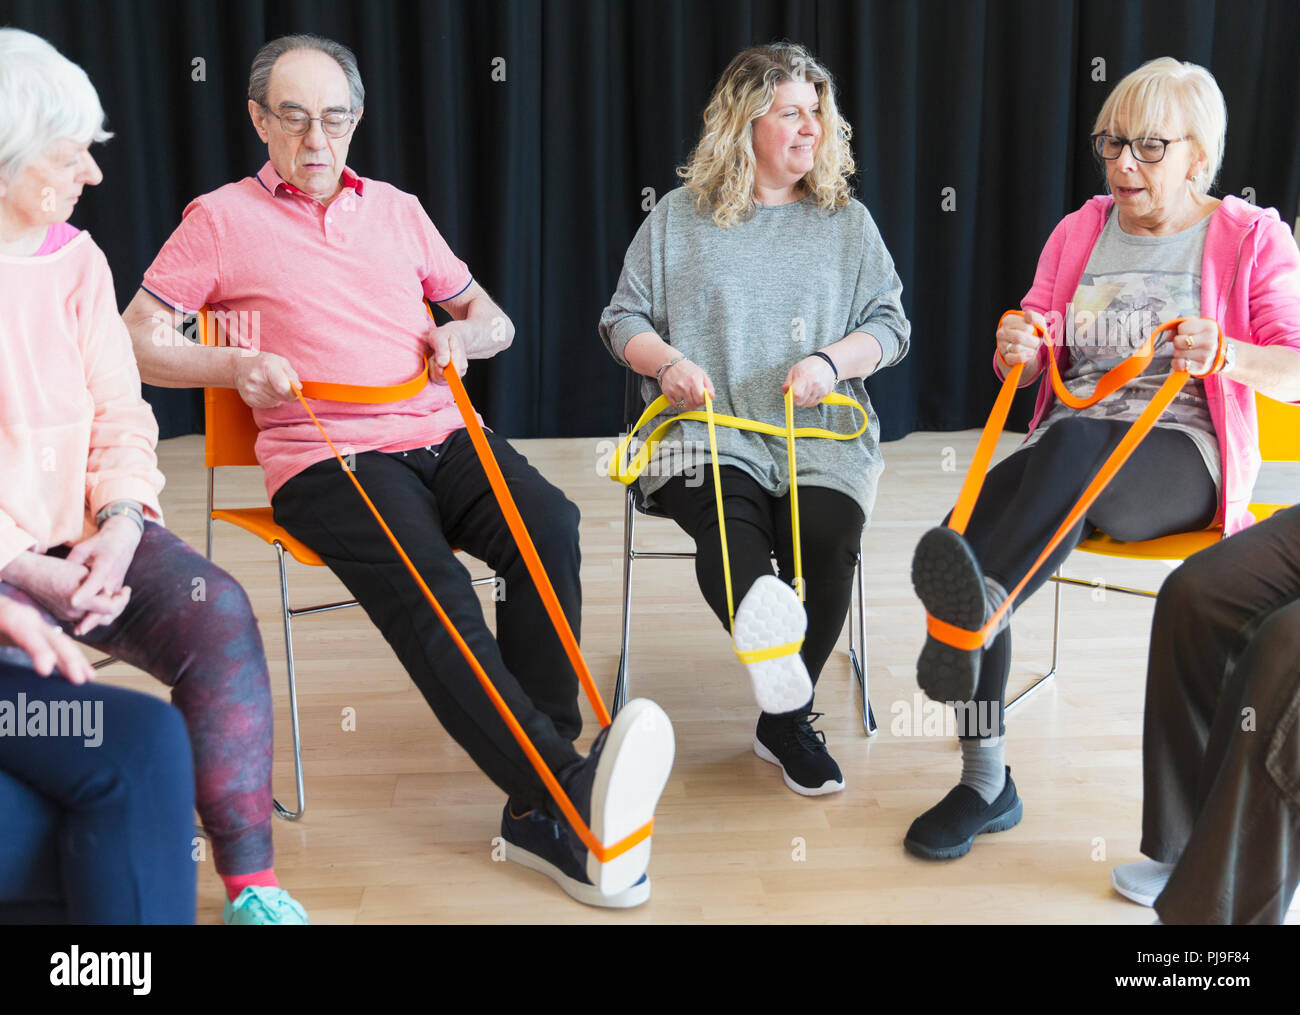 Aktive Senioren trainieren im Kreis, mit Gurten Beine ausstrecken Stockfoto